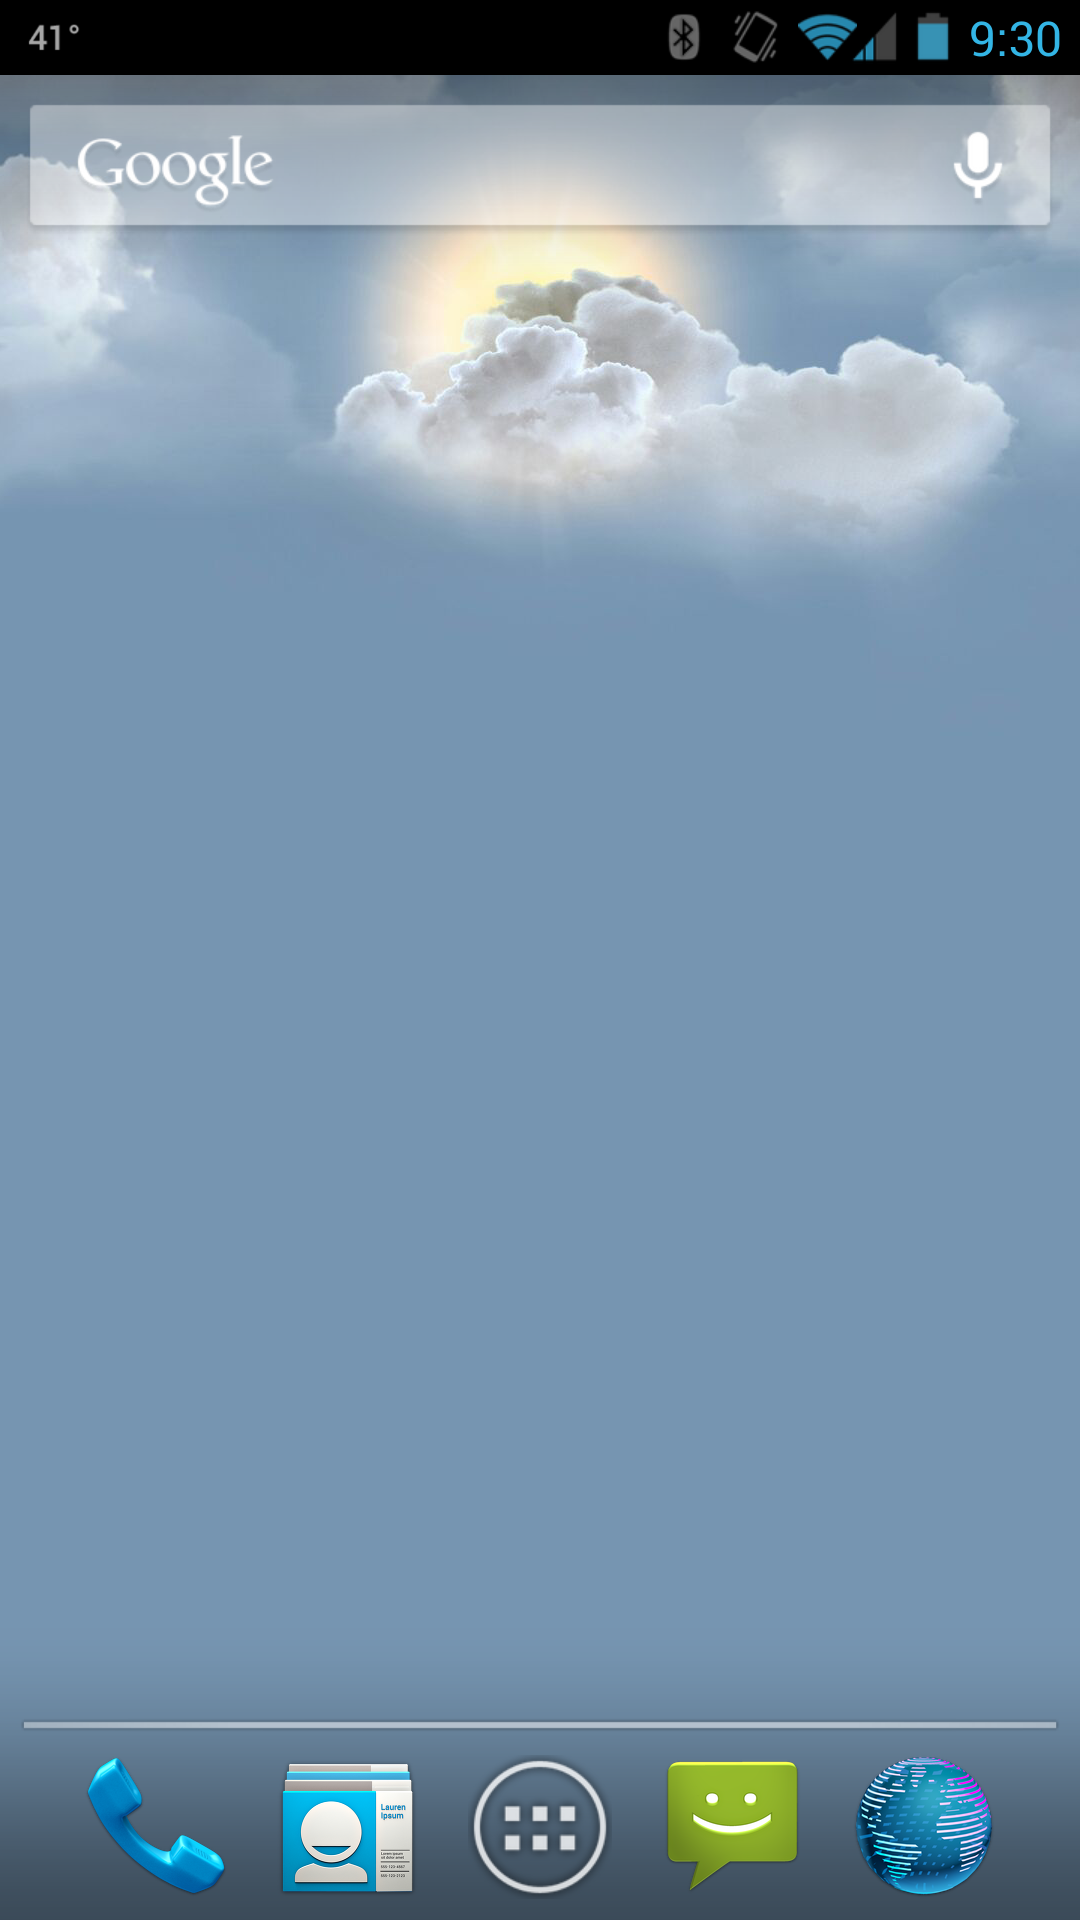 htc live wallpaper,cielo,nube,giorno,immagine dello schermo,cumulo